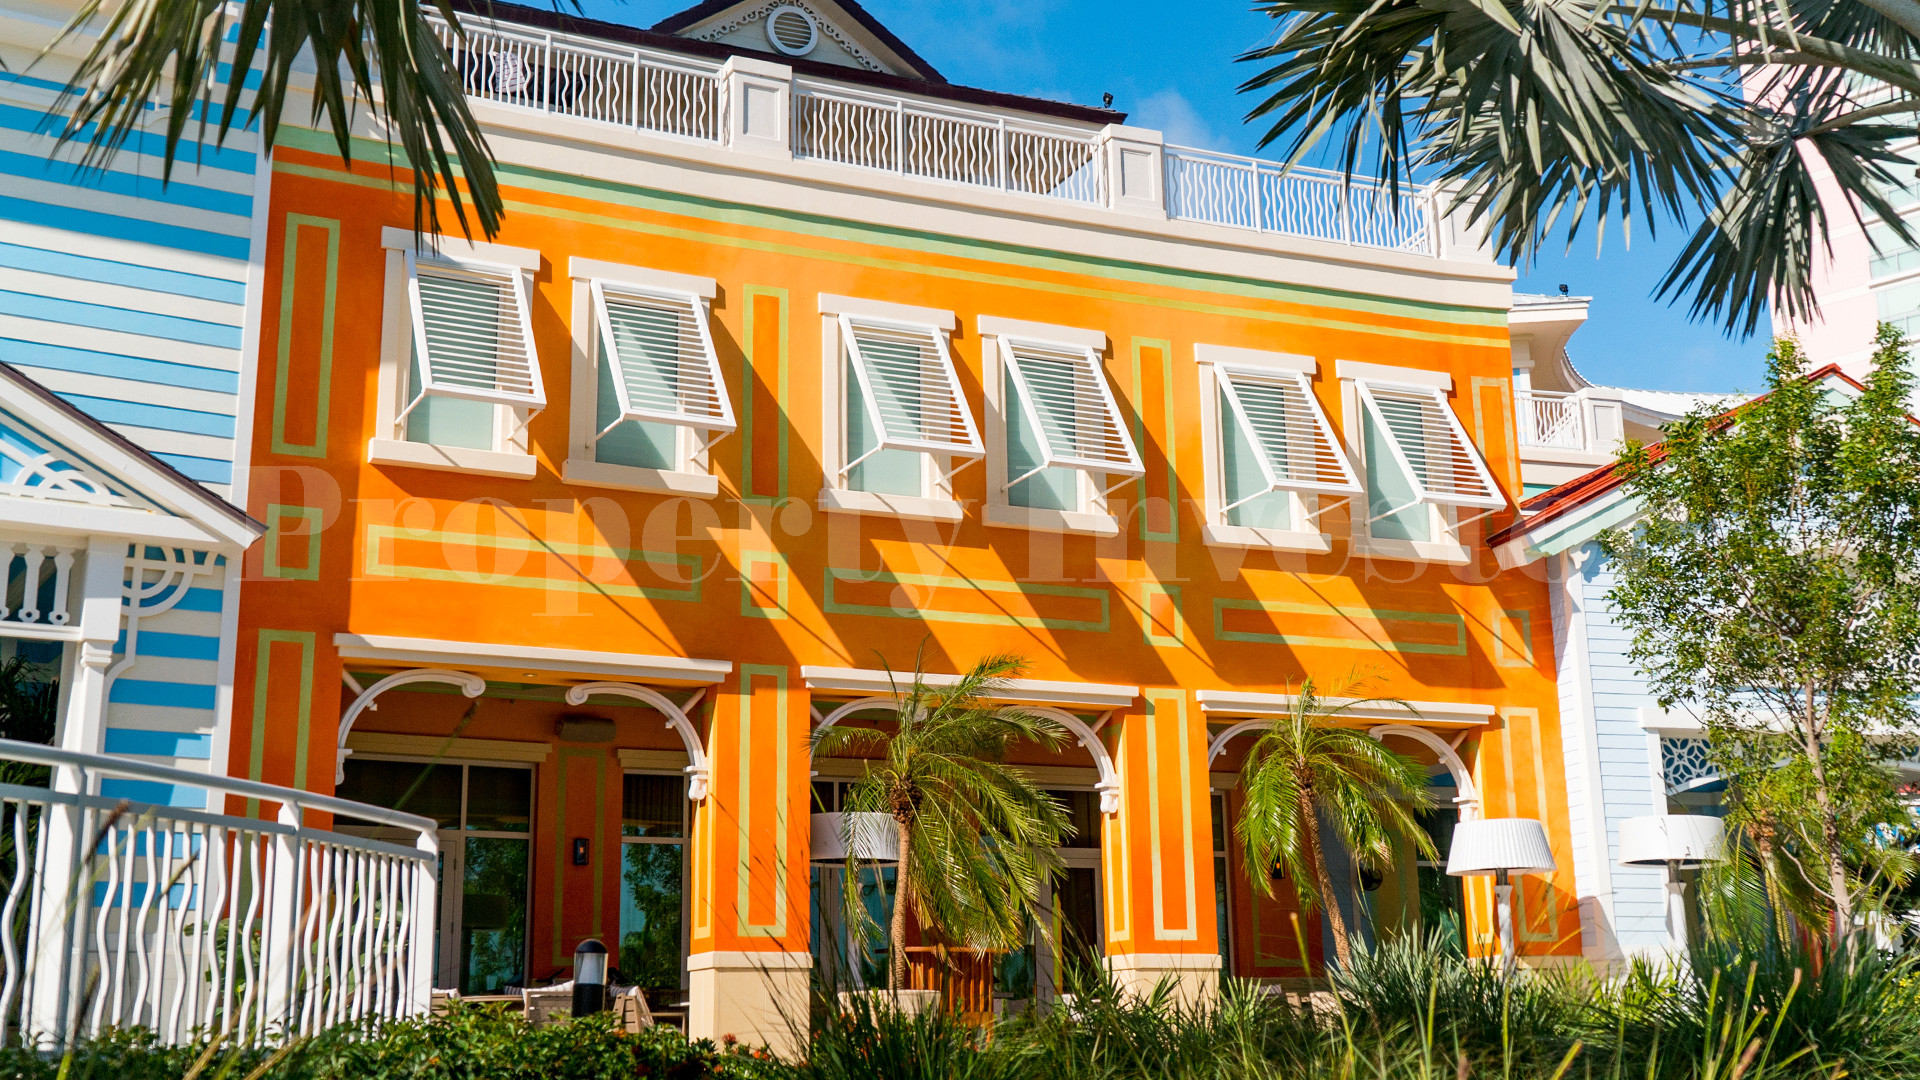 Продаются резиденции с 3 спальнями в апарт-отеле на Багамах (Residence 115)